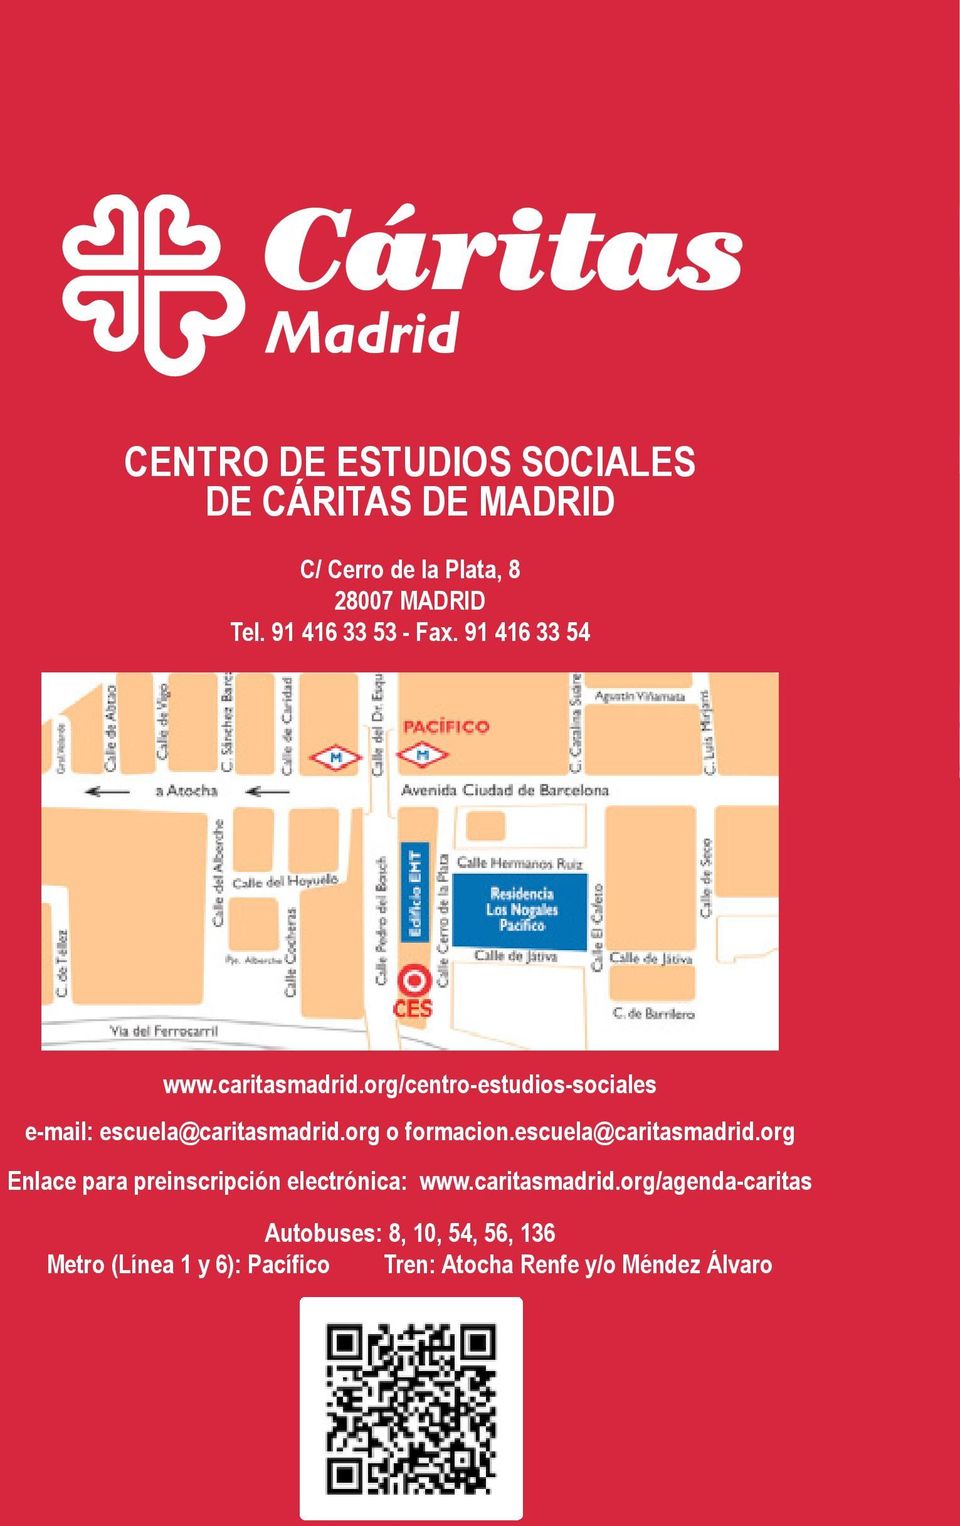 org/centro-estudios-sociales e-mail: escuela@caritasmadrid.